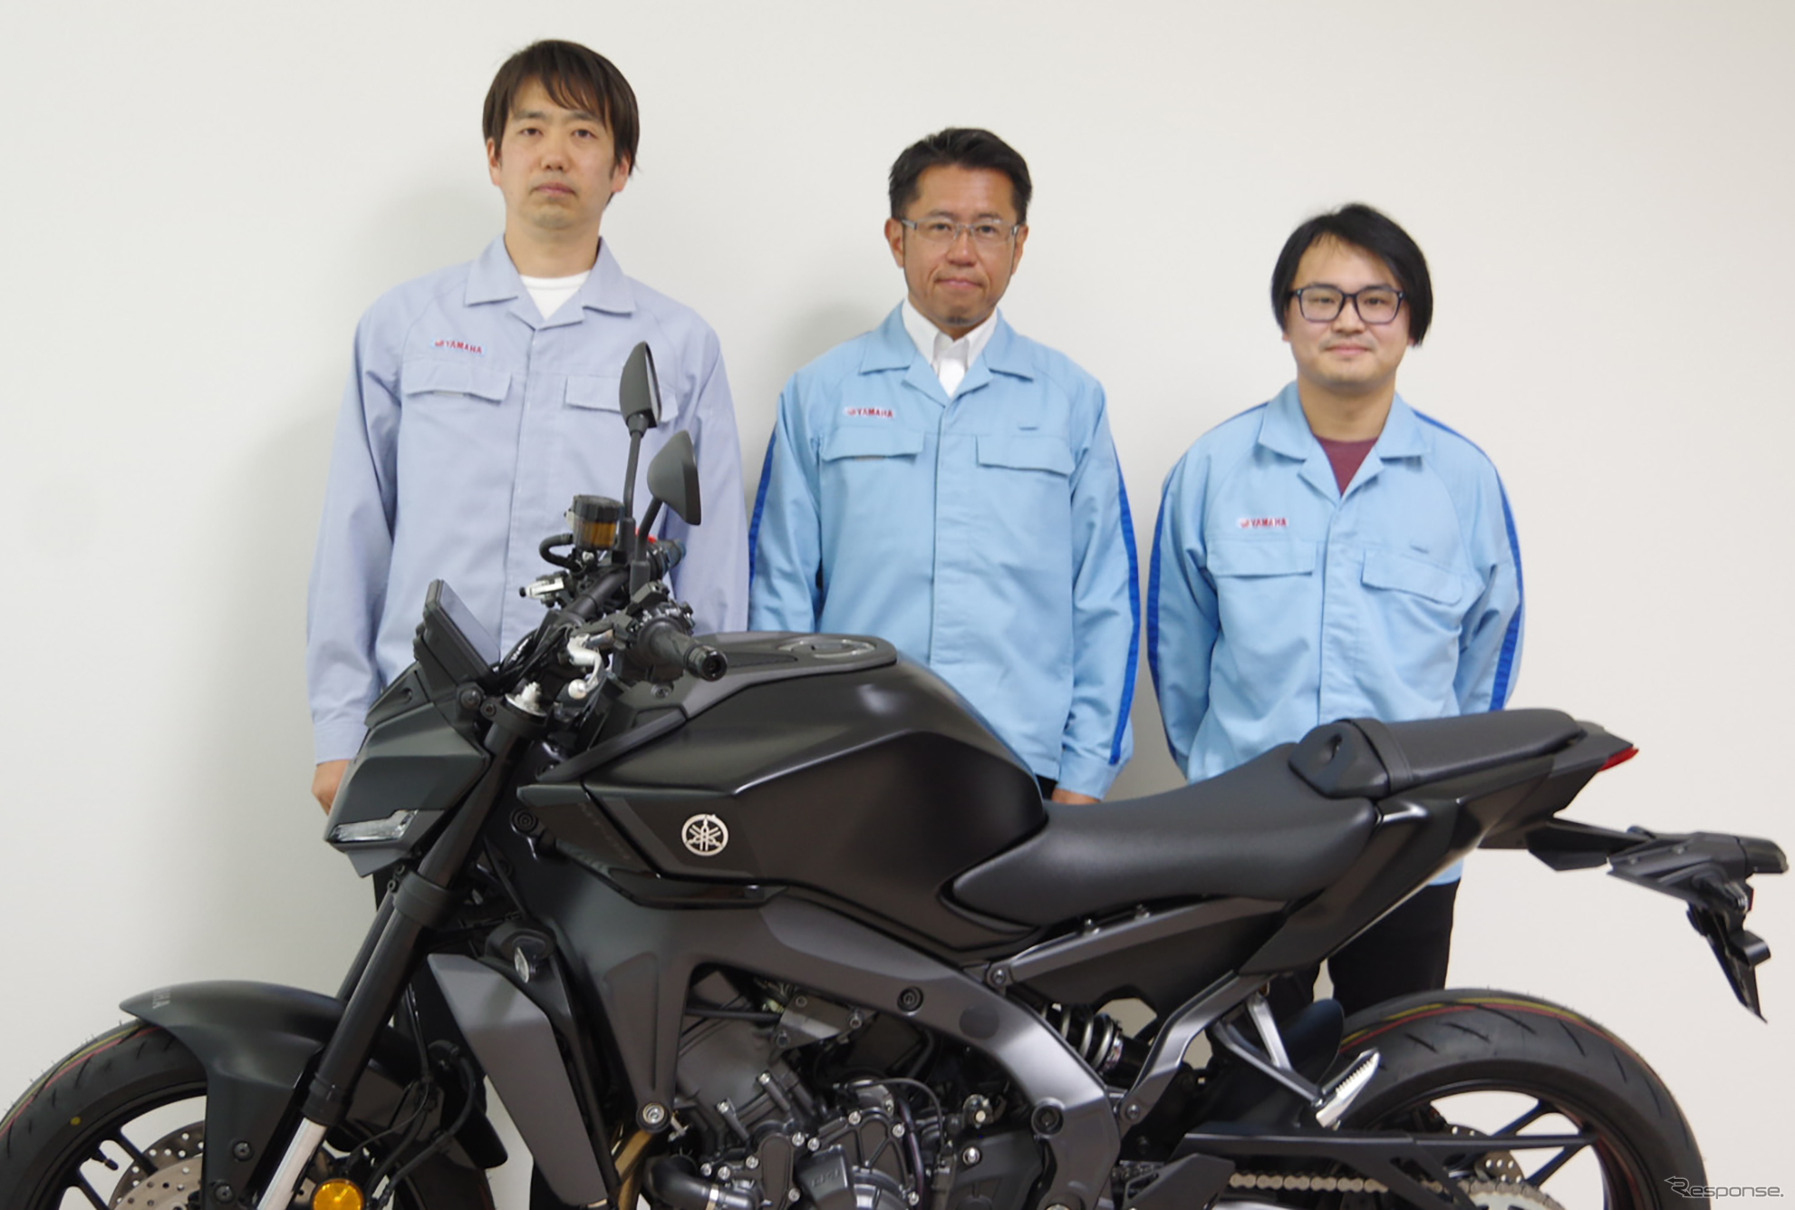 ヤマハ MT-09 新型の開発メンバー。左から電子システム担当の稲葉さん、PLの津谷さん、パワートレイン担当の川名さん